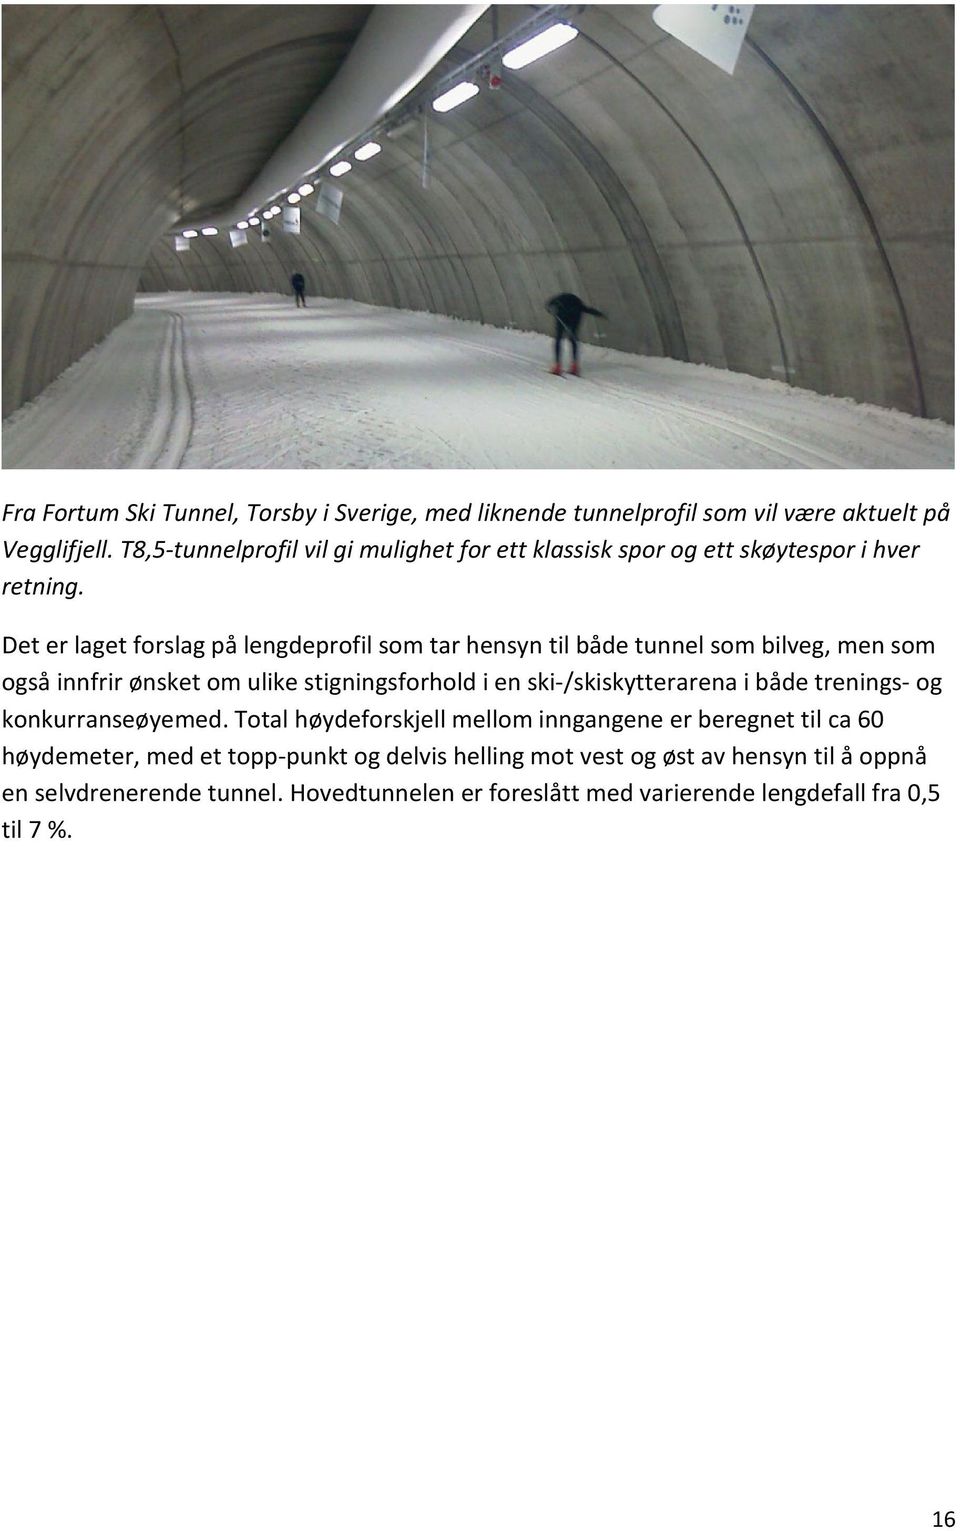 Det er laget forslag på lengdeprofil som tar hensyn til både tunnel som bilveg, men som også innfrir ønsket om ulike stigningsforhold i en ski-/skiskytterarena